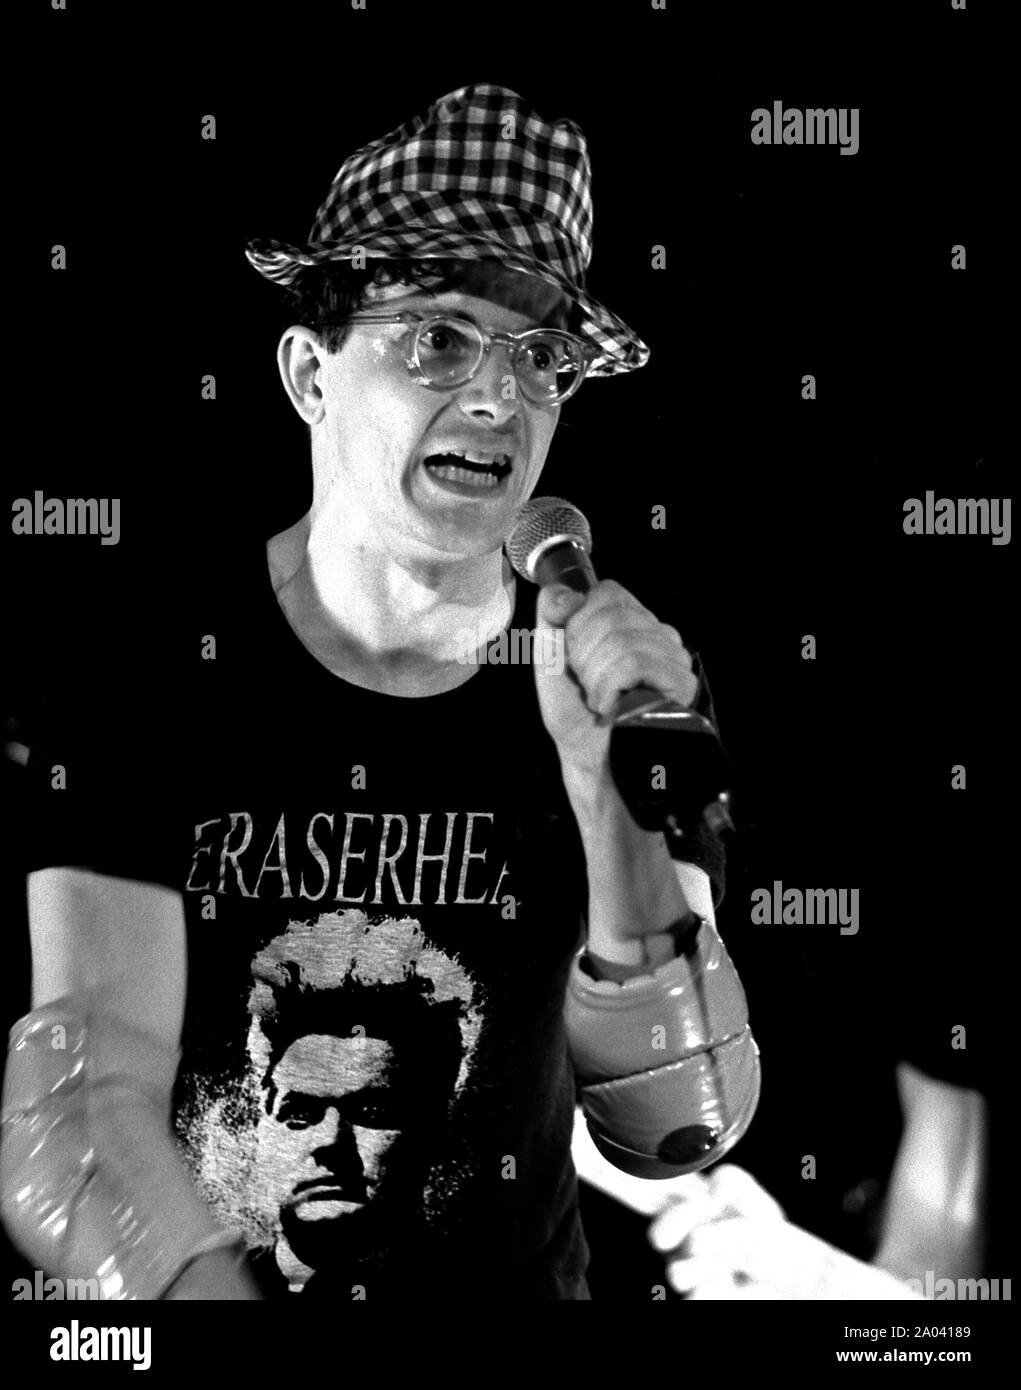 Mark Mothersbaugh du groupe de musique DEVO effectue sur scène à New York à  la ligne du bas en octobre 1978. Il porte un chapeau à carreaux et un  t-shirt Eraserhead Photo